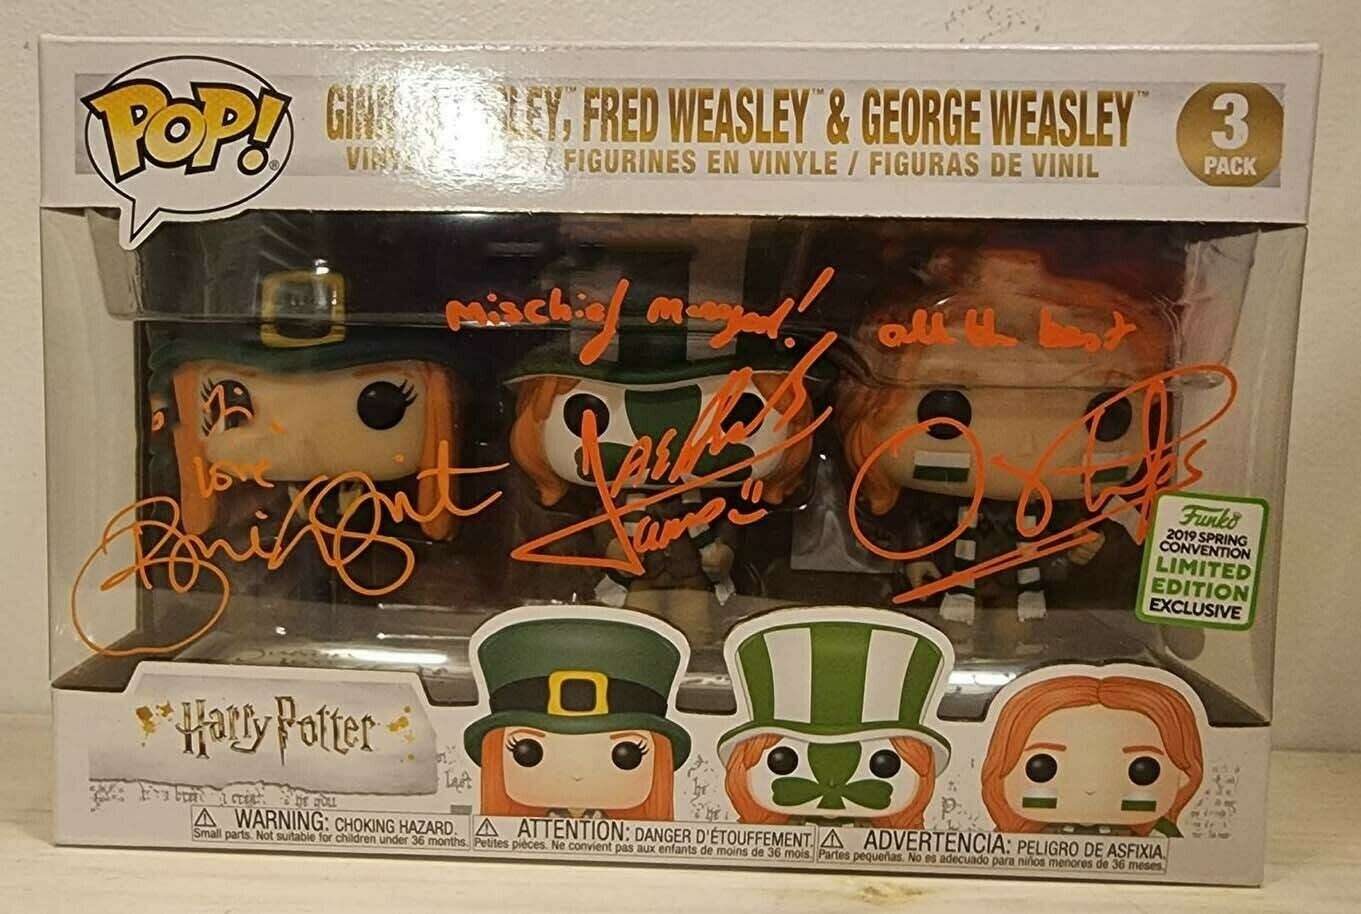 Ginny Weasley, Fred Weasley, and George Weasley